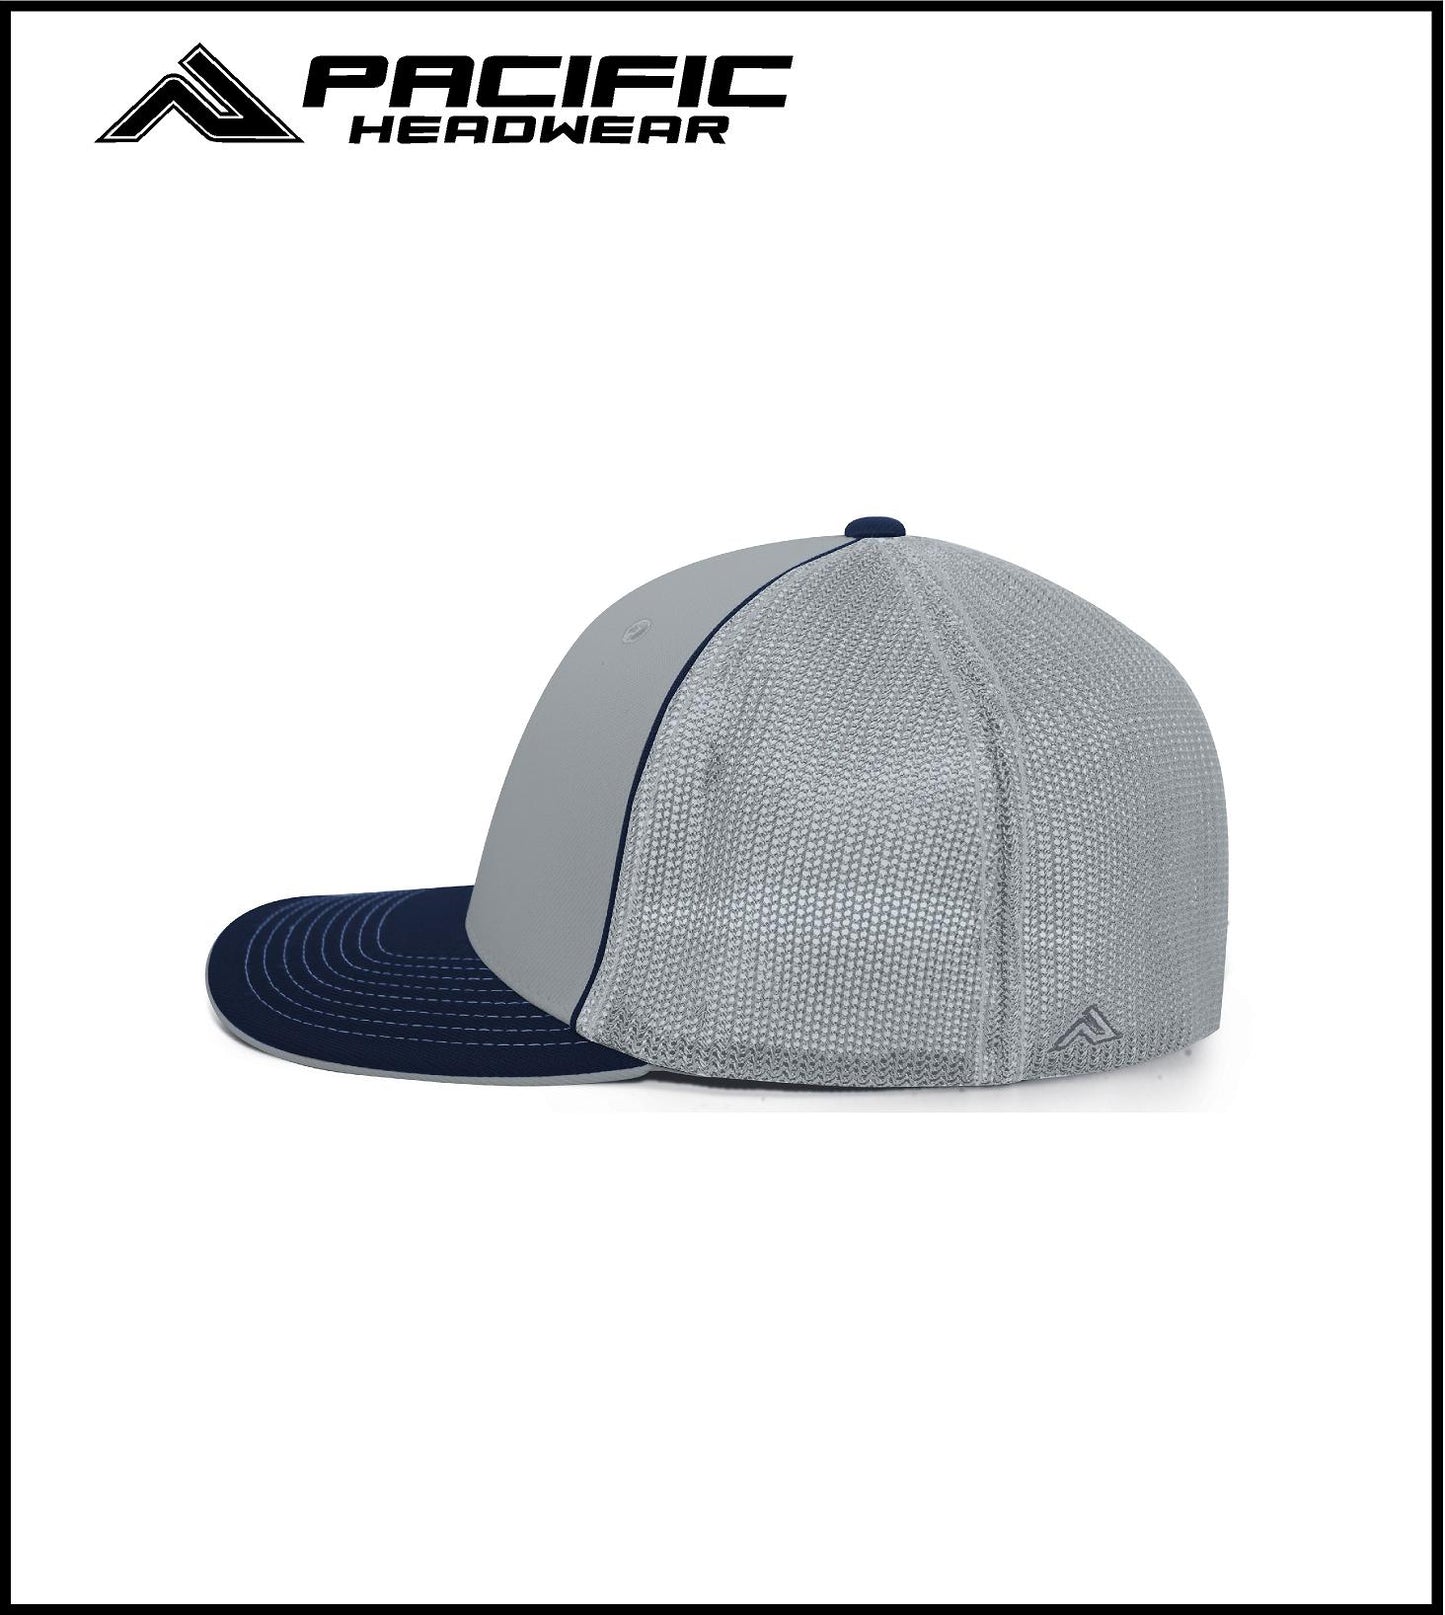 Pacific Headwear Silver/Navy Trucker FlexFit Cap